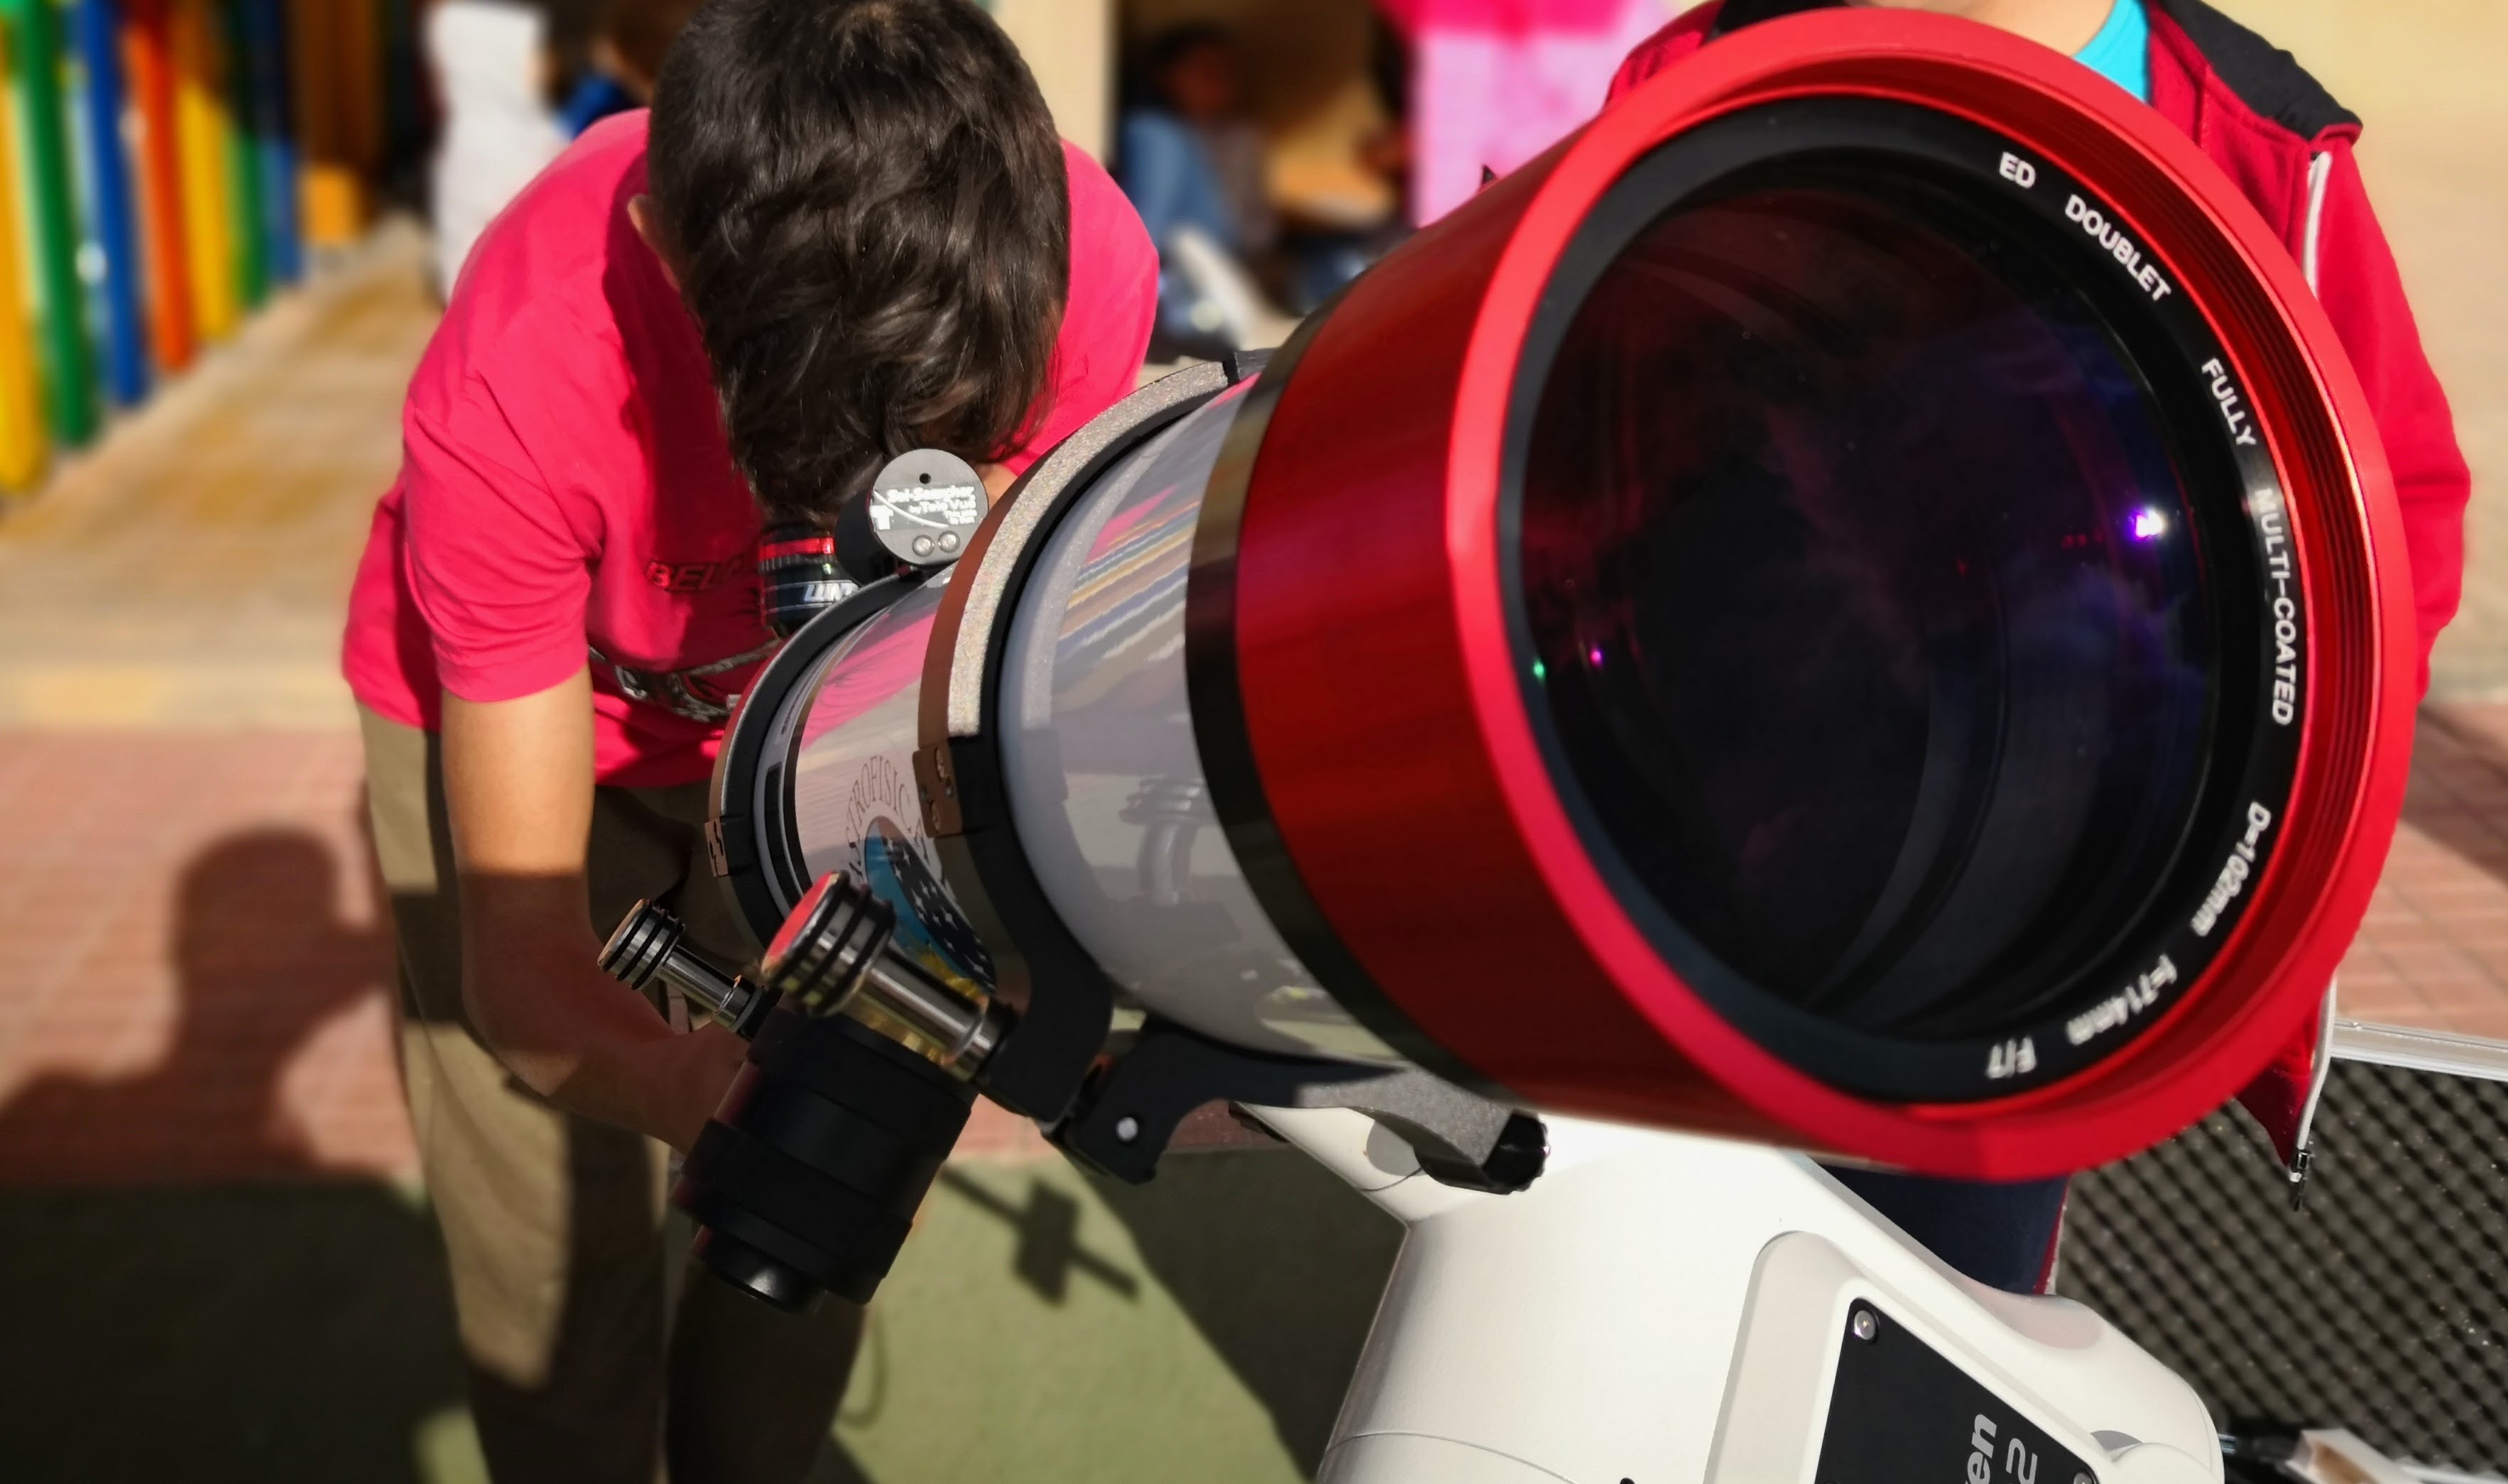 Observación solar con el telescopio Lunt del proyecto en el CEIP La Era, en Guía de Isora. Crédito: Donovan Mclean/Enrique Mesa/IAC.